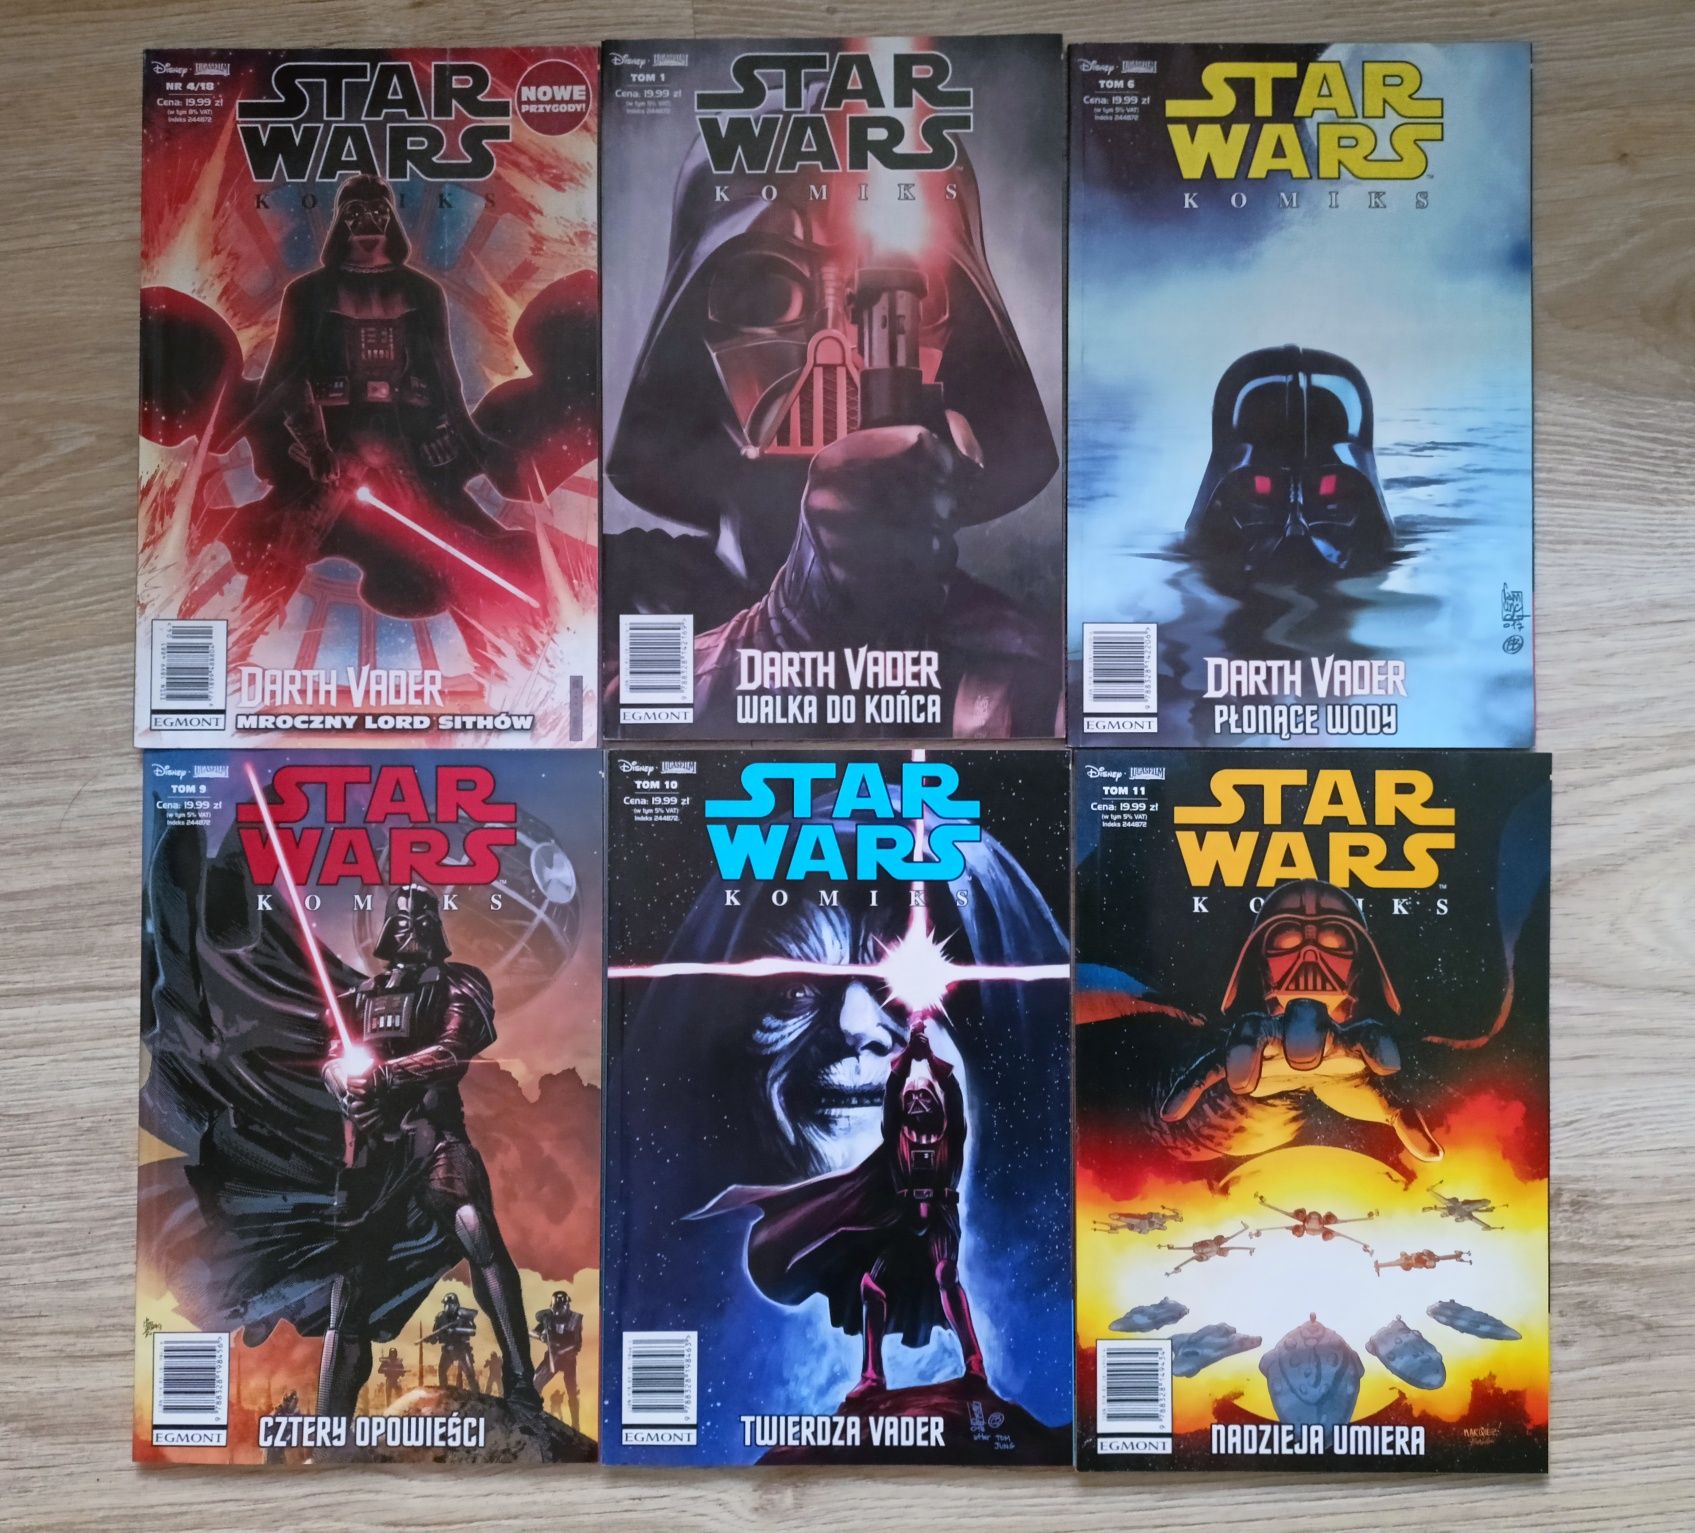 Star wars: Komiks komplet 26 zeszytów